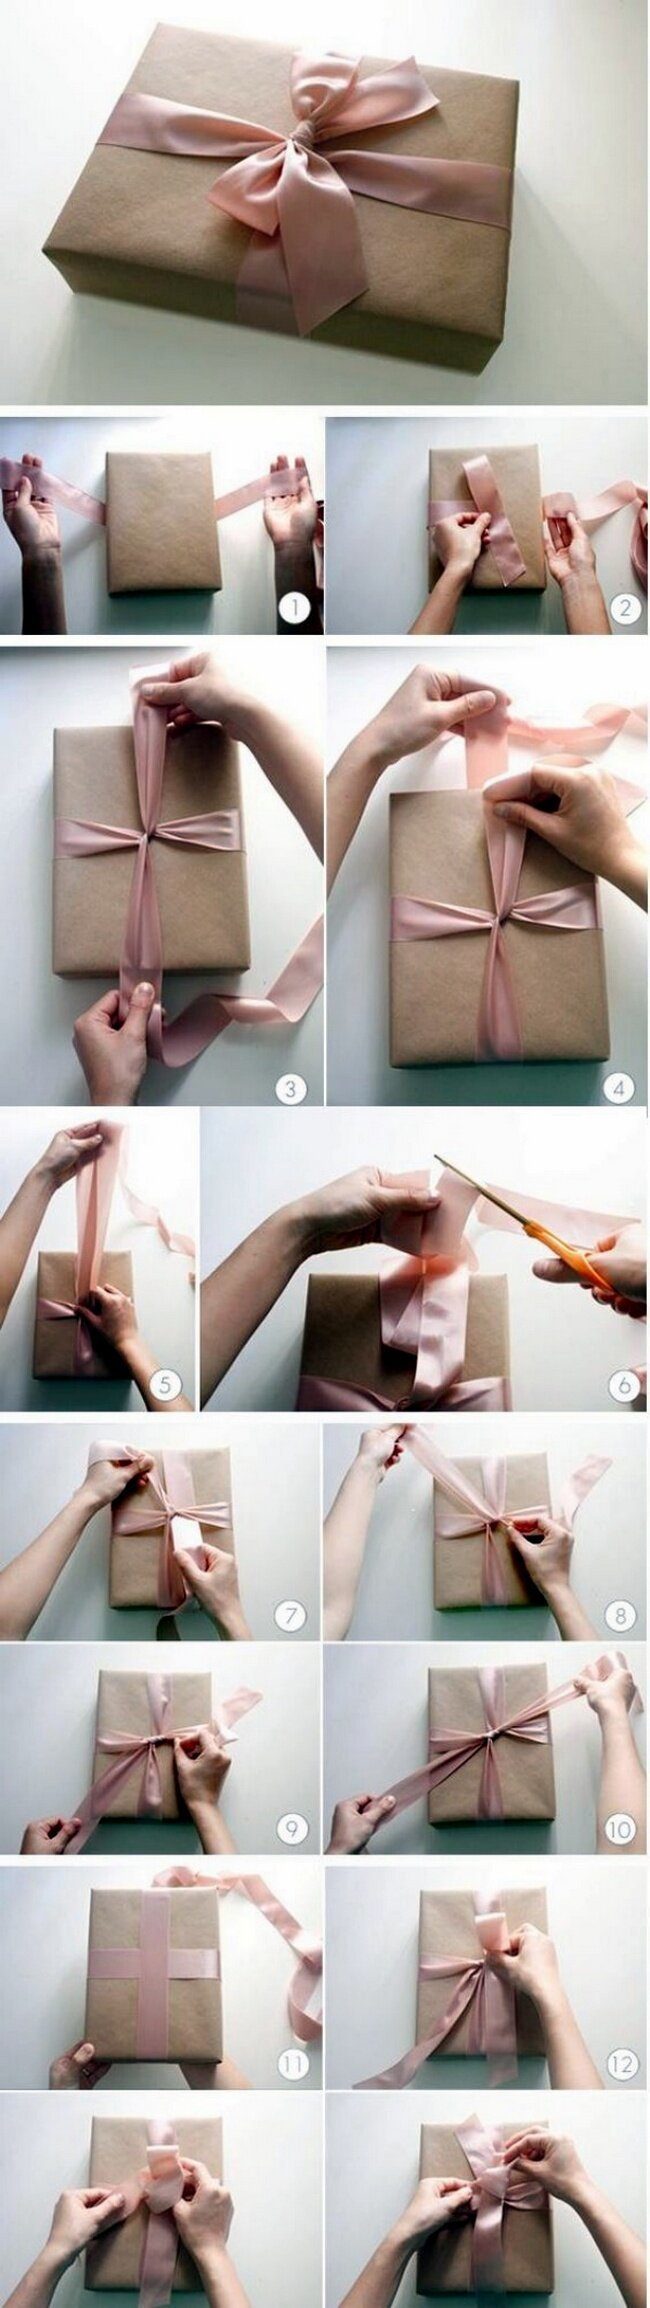 Лучшие идеи для упаковки новогодних подарков